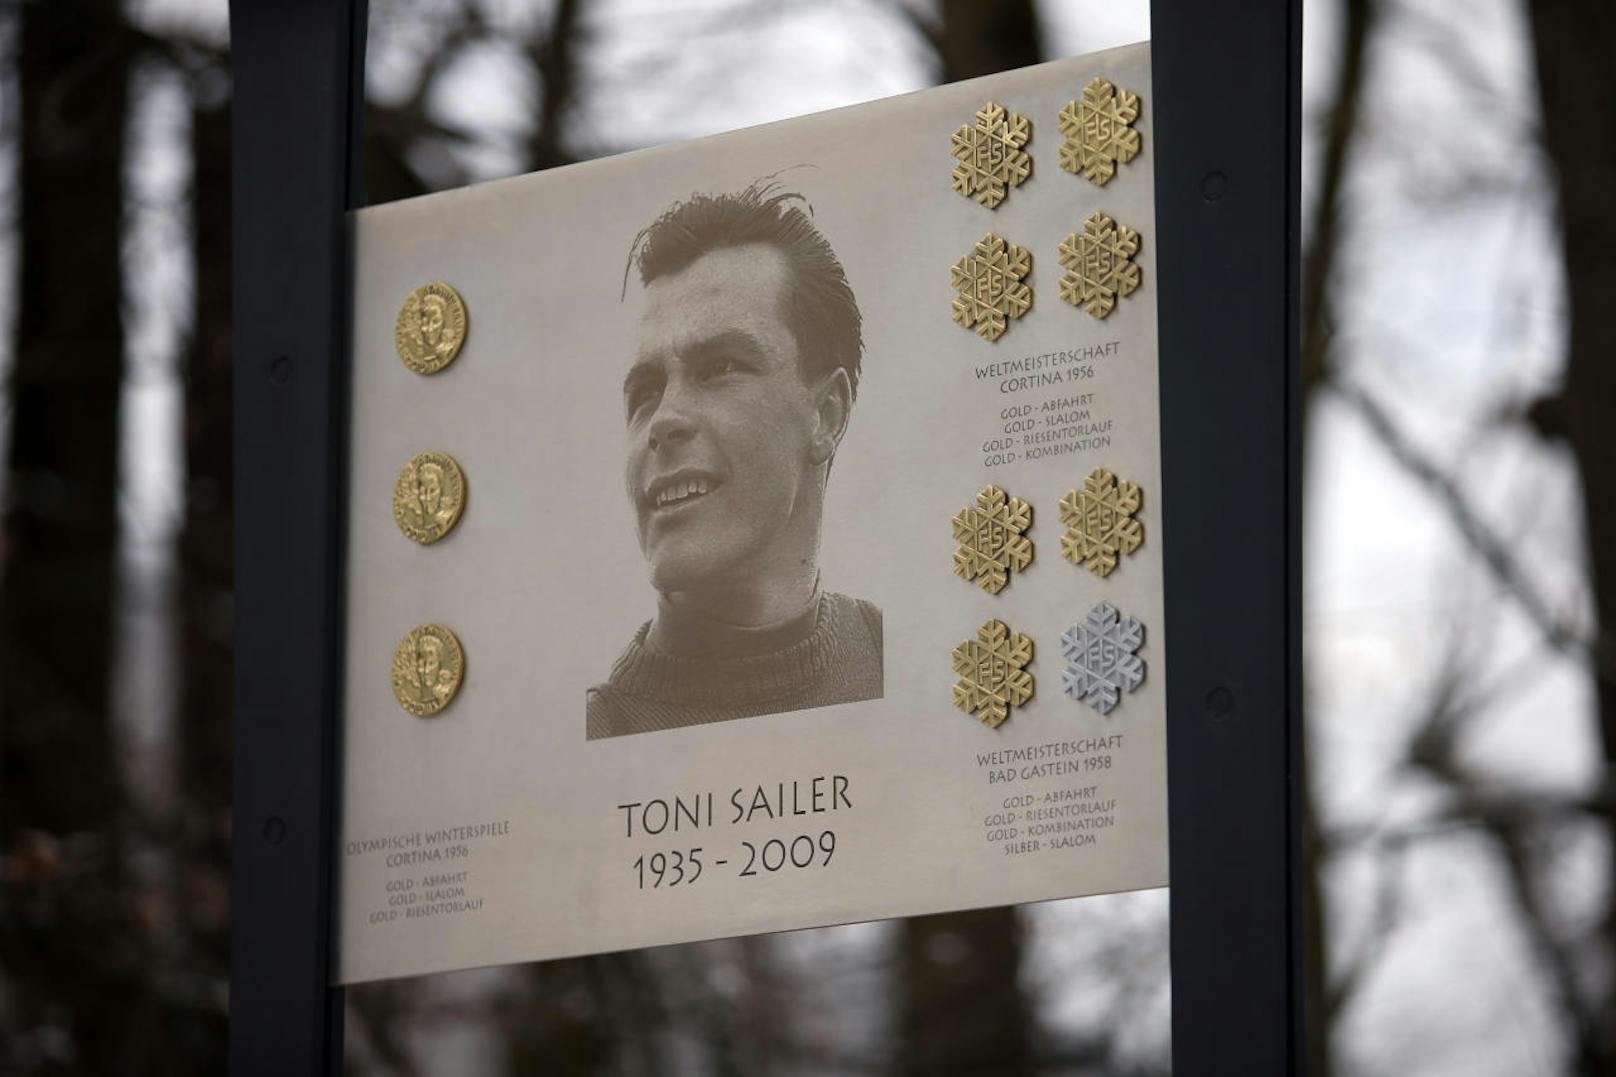 <b>Platz 1: Toni Sailer (7 x Gold, 1 x Silber, 0 x Bronze)</b>
Der Größte bei Weltmeisterschaften ist somit Toni Sailer mit insgesamt sieben Einzel-Titeln. 1956 räumte er in Cortina groß ab, gewann Abfahrt, Slalom, Kombi und Riesentorlauf. 1958 in Bad Gastein fuhr er in der Abfahrt, im RTL und in der Kombi allen davon. Im Slalom reichte es immerhin zu Silber.